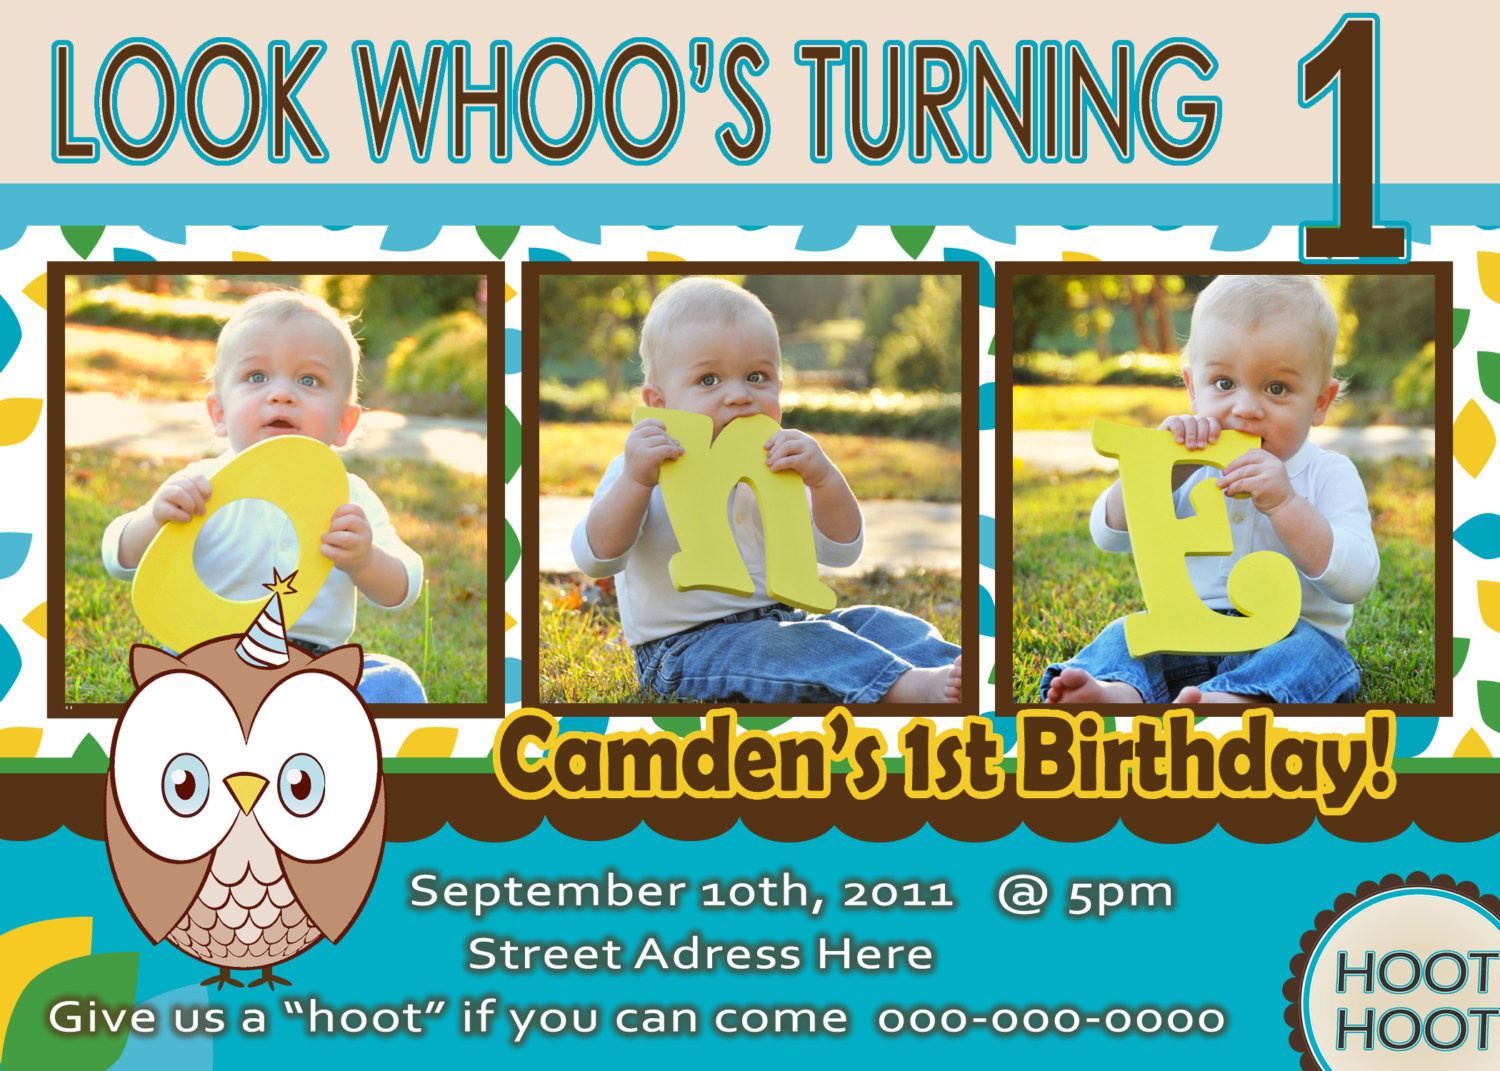 One Year Old Boy Birthday Party Ideas
 Owl Invite Boy 1st Birthday Party Invitation Look Whoos 1 Owl